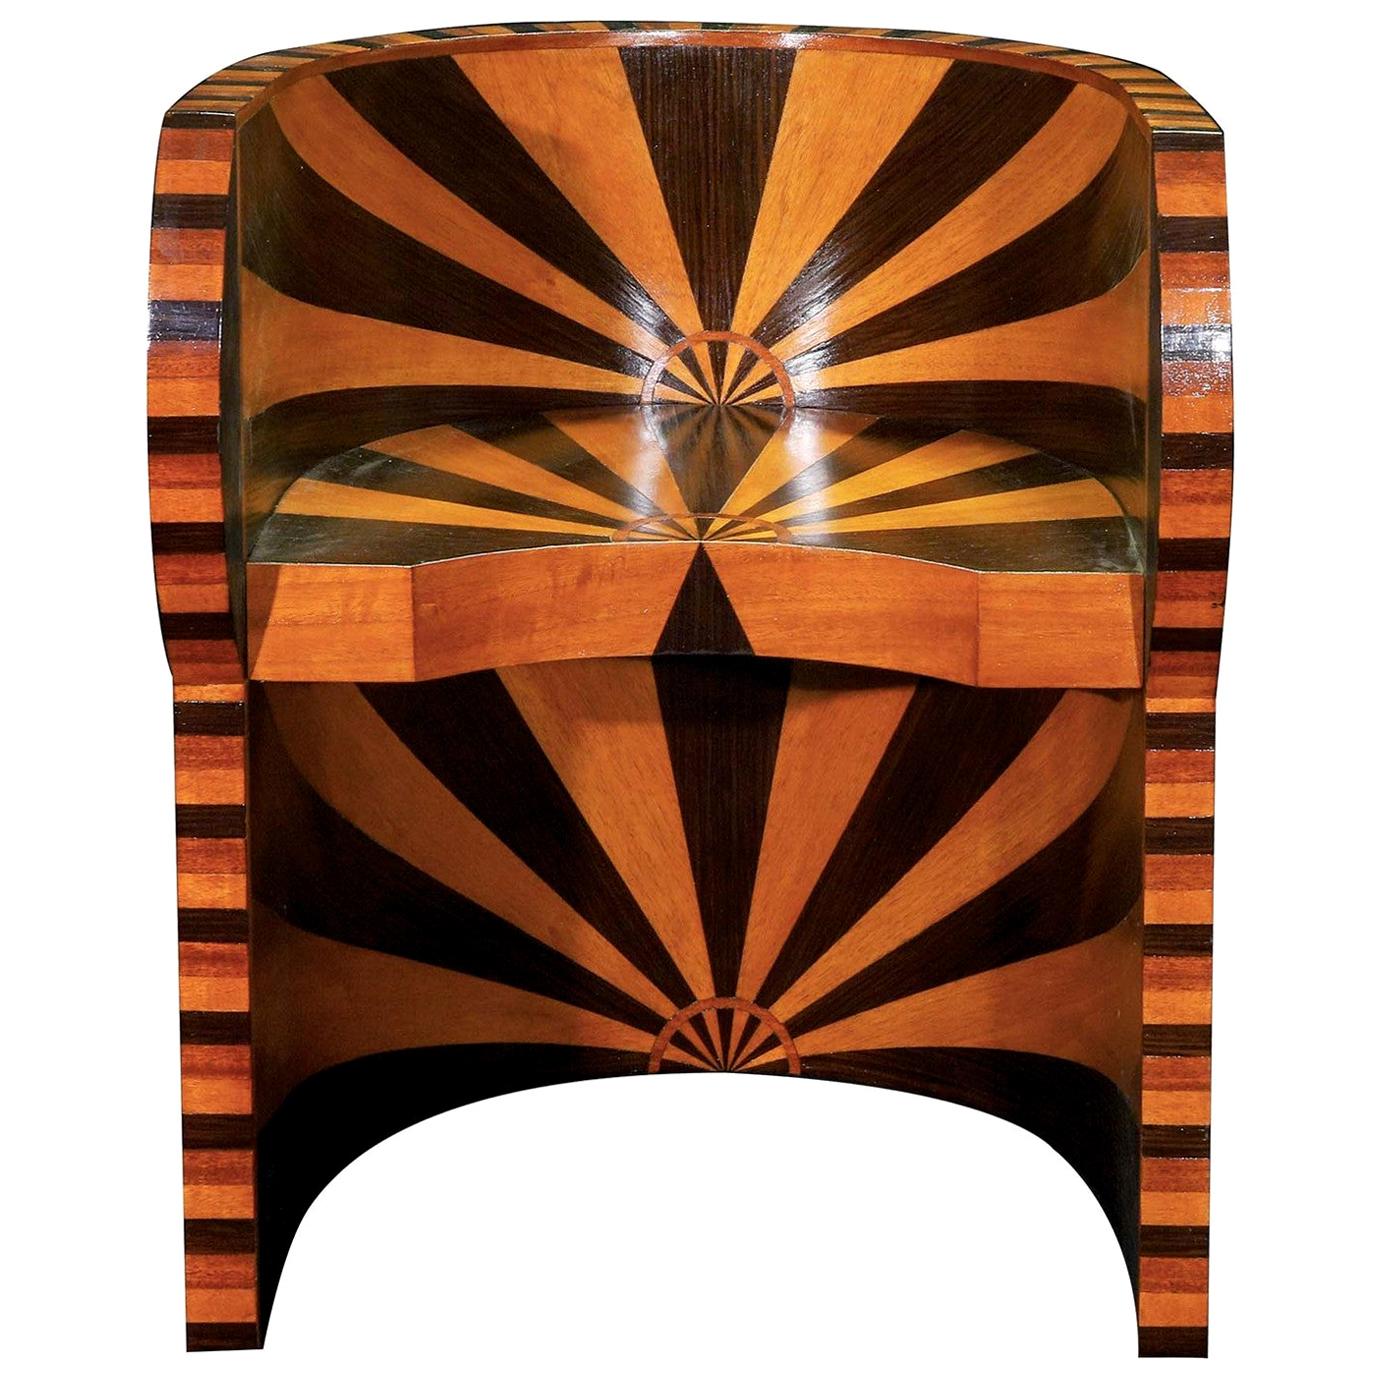 Art Deco Style Armchair